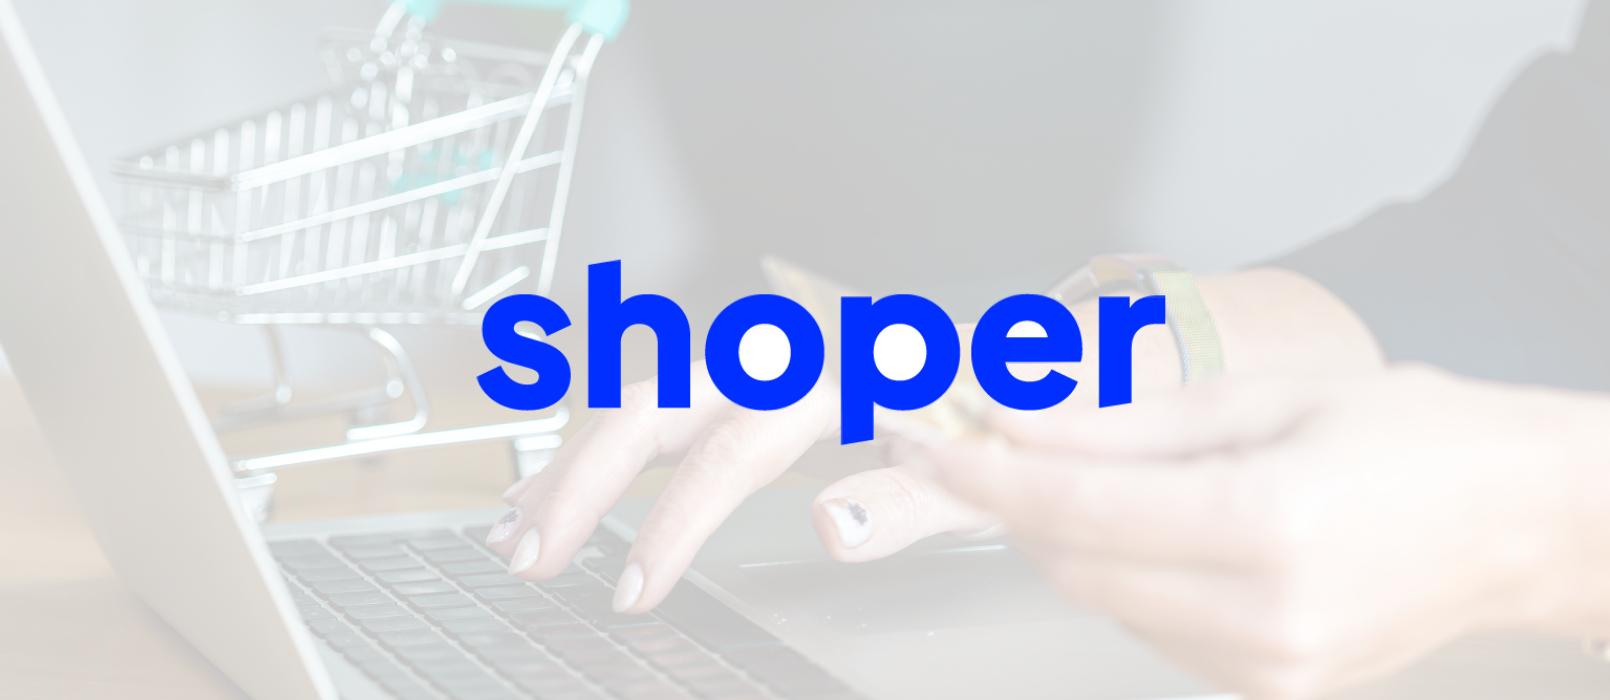 Shoper - wie funktioniert es und wie bereitet man einen effektiven E-Commerce-Shop auf dieser Plattform vor?